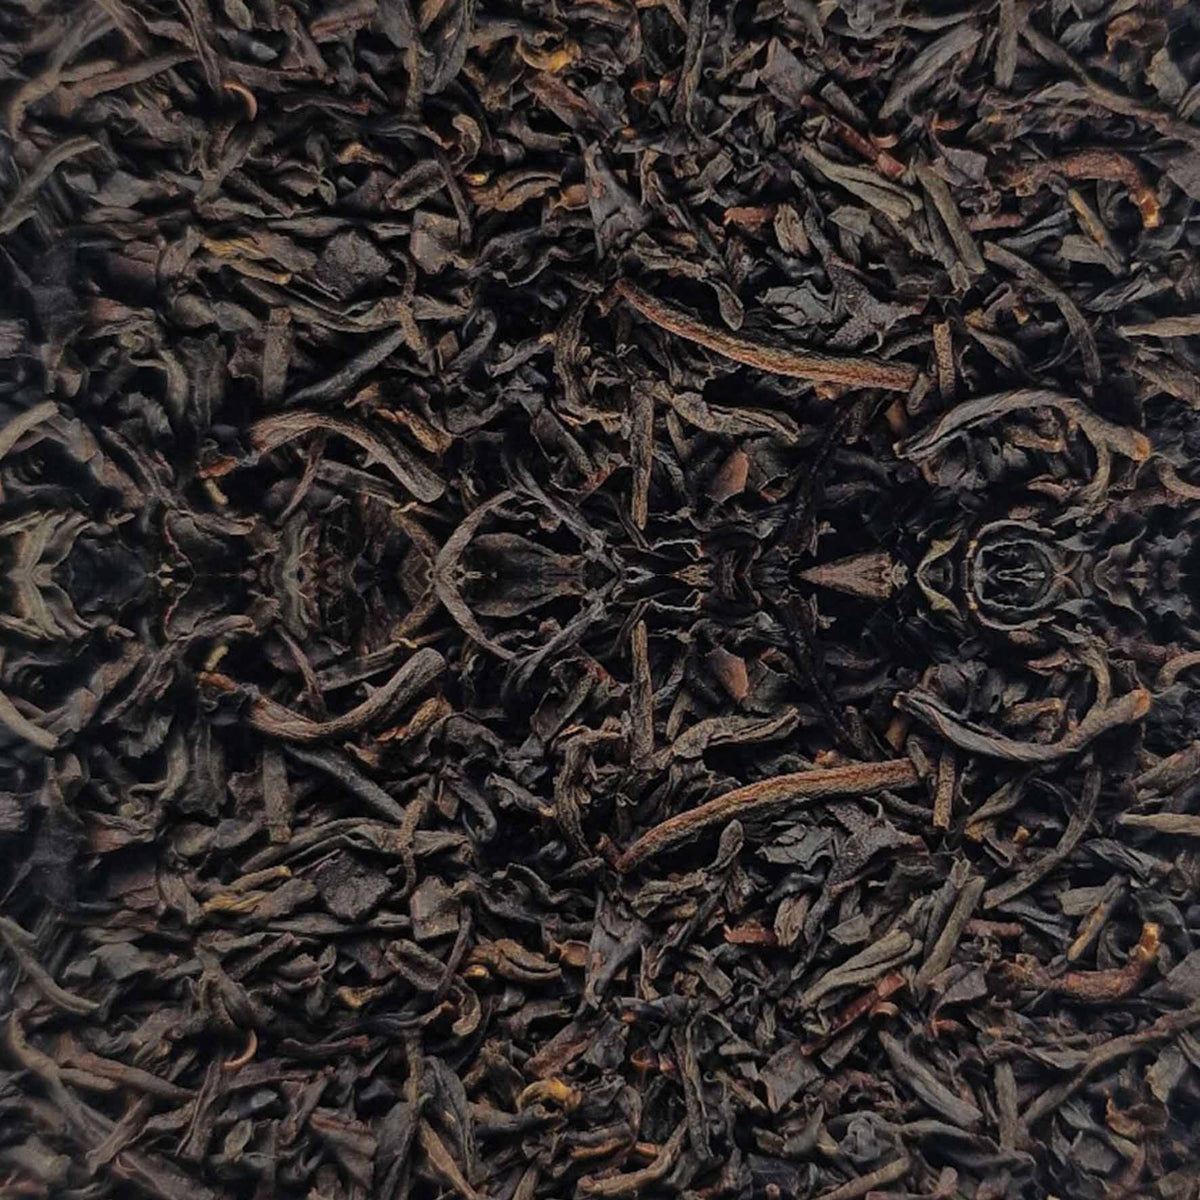 Keemun Panda Black Loose Leaf Tea - tea leaves